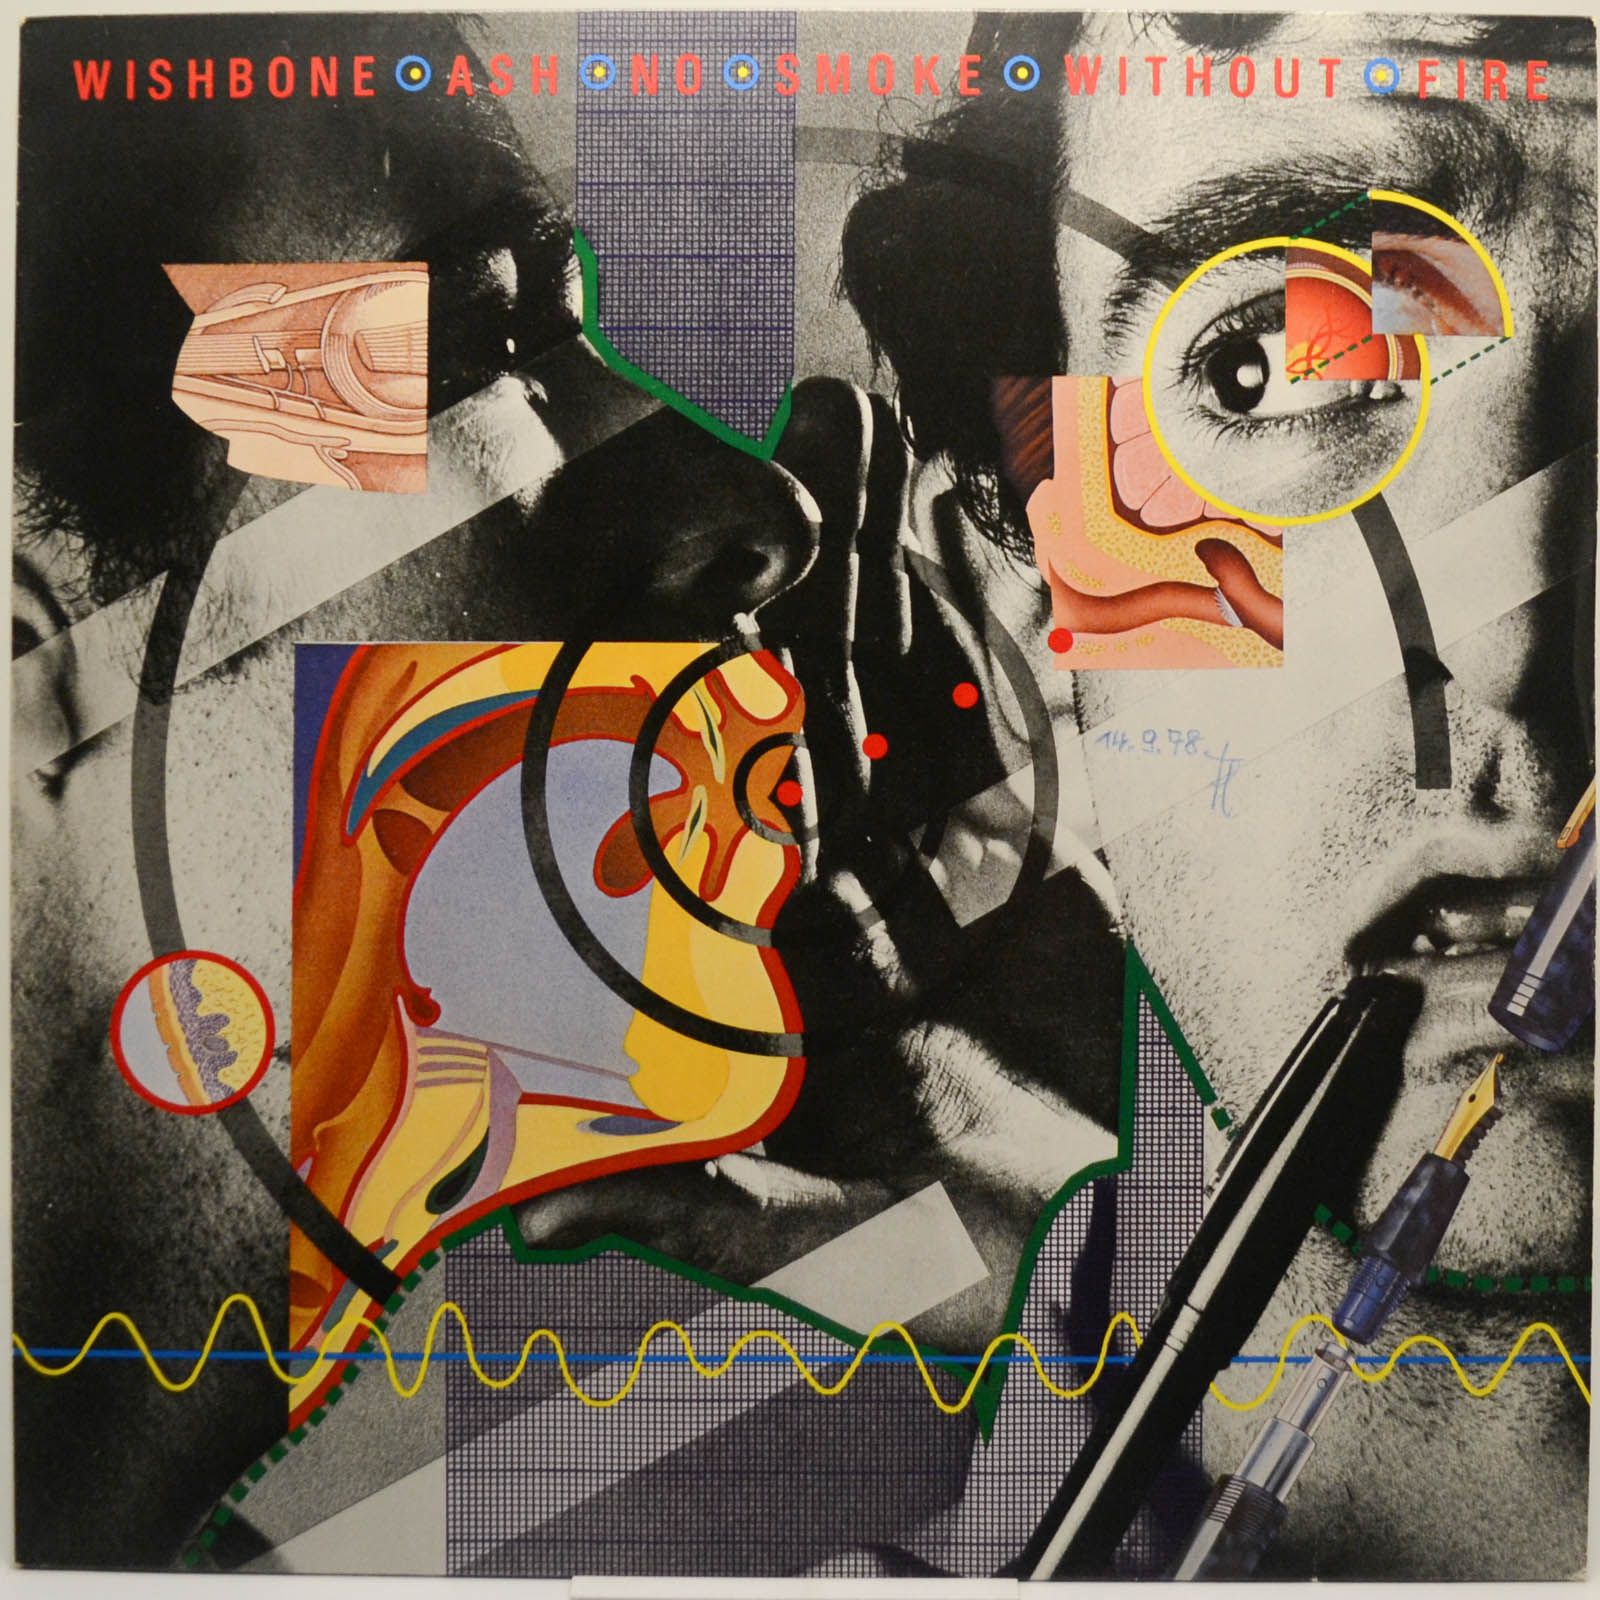 Wishbone Ash — No Smoke Without Fire, 1978